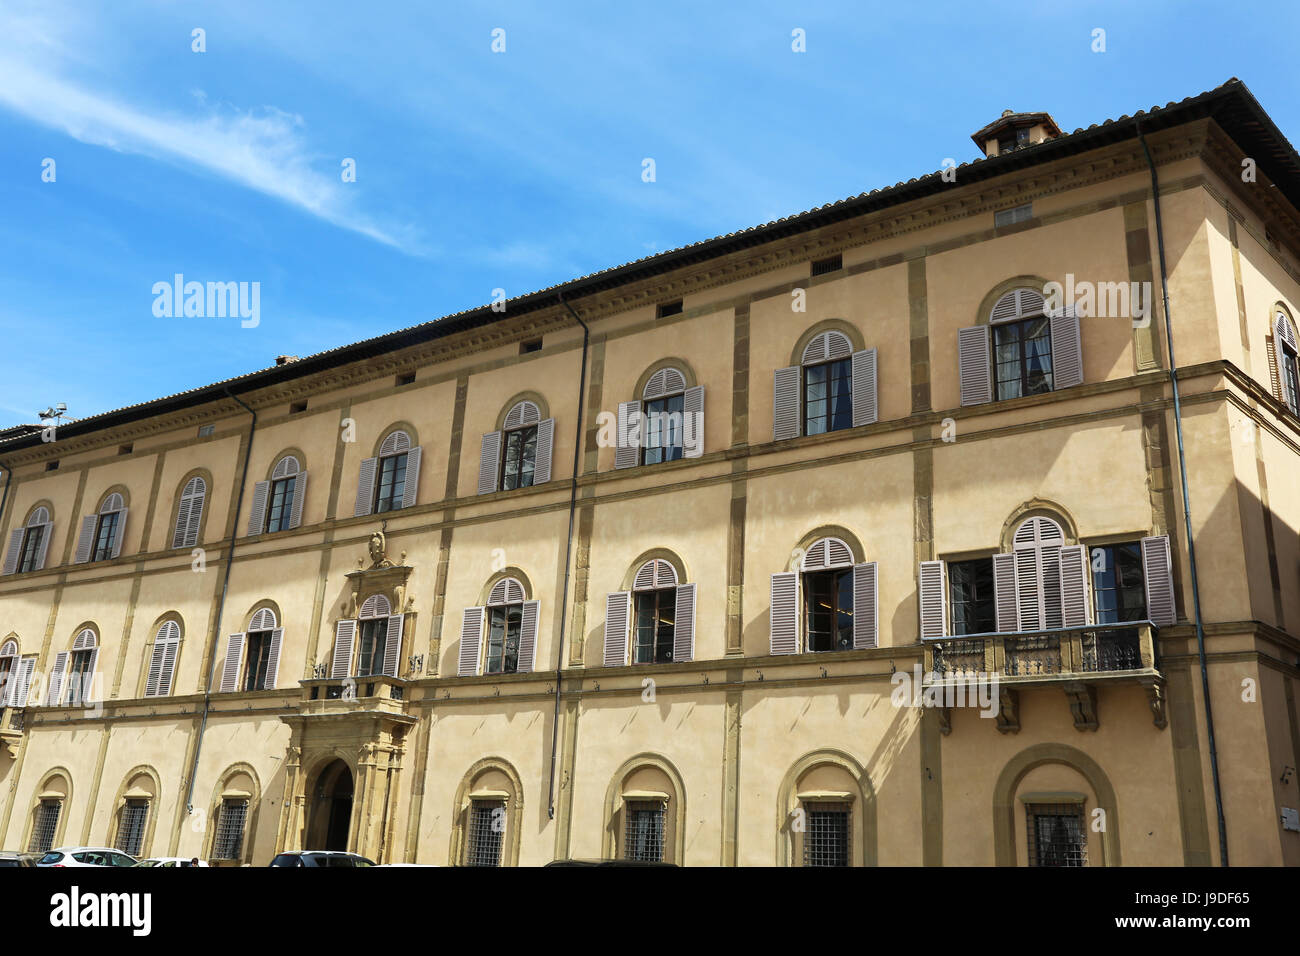 La toscane, Sienne, Italie, musée, carré, palace, piazza, amministrazione, Banque D'Images